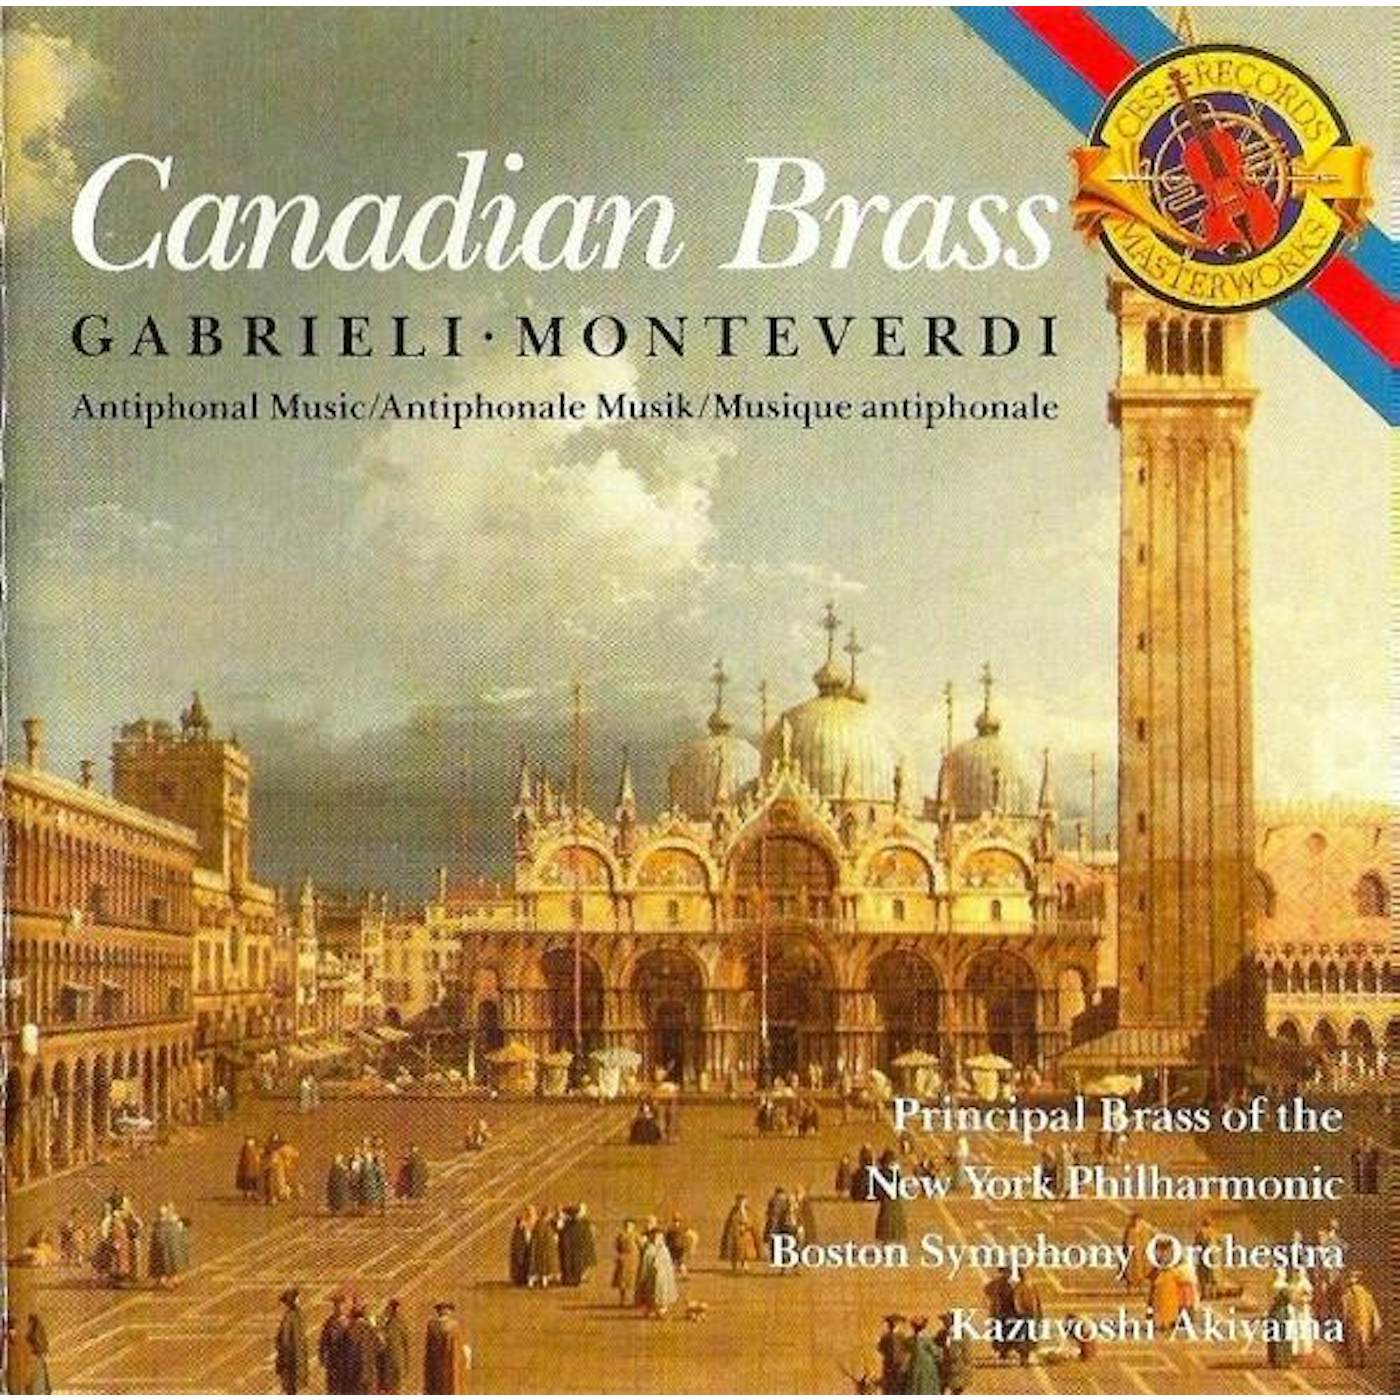 Canadian Brass GABRIELI ALBUM / MONTEVERDI ALBUM CD